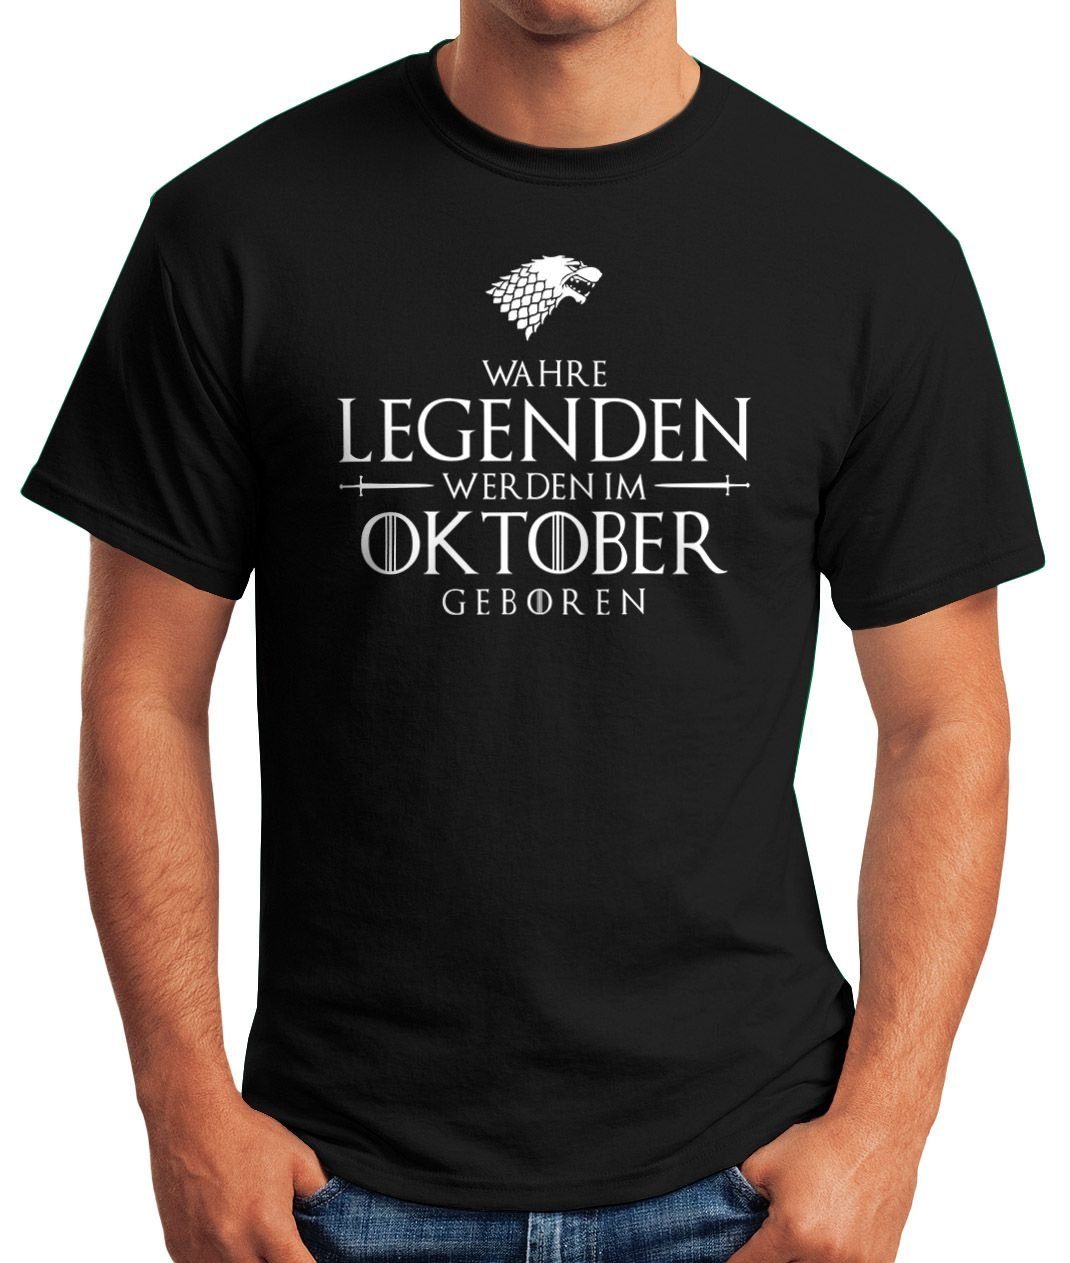 Moonworks® T-Shirt Wahre werden im geboren Print-Shirt Oktober Object] [object schwarz MoonWorks mit Print Fun-Shirt Legenden Herren